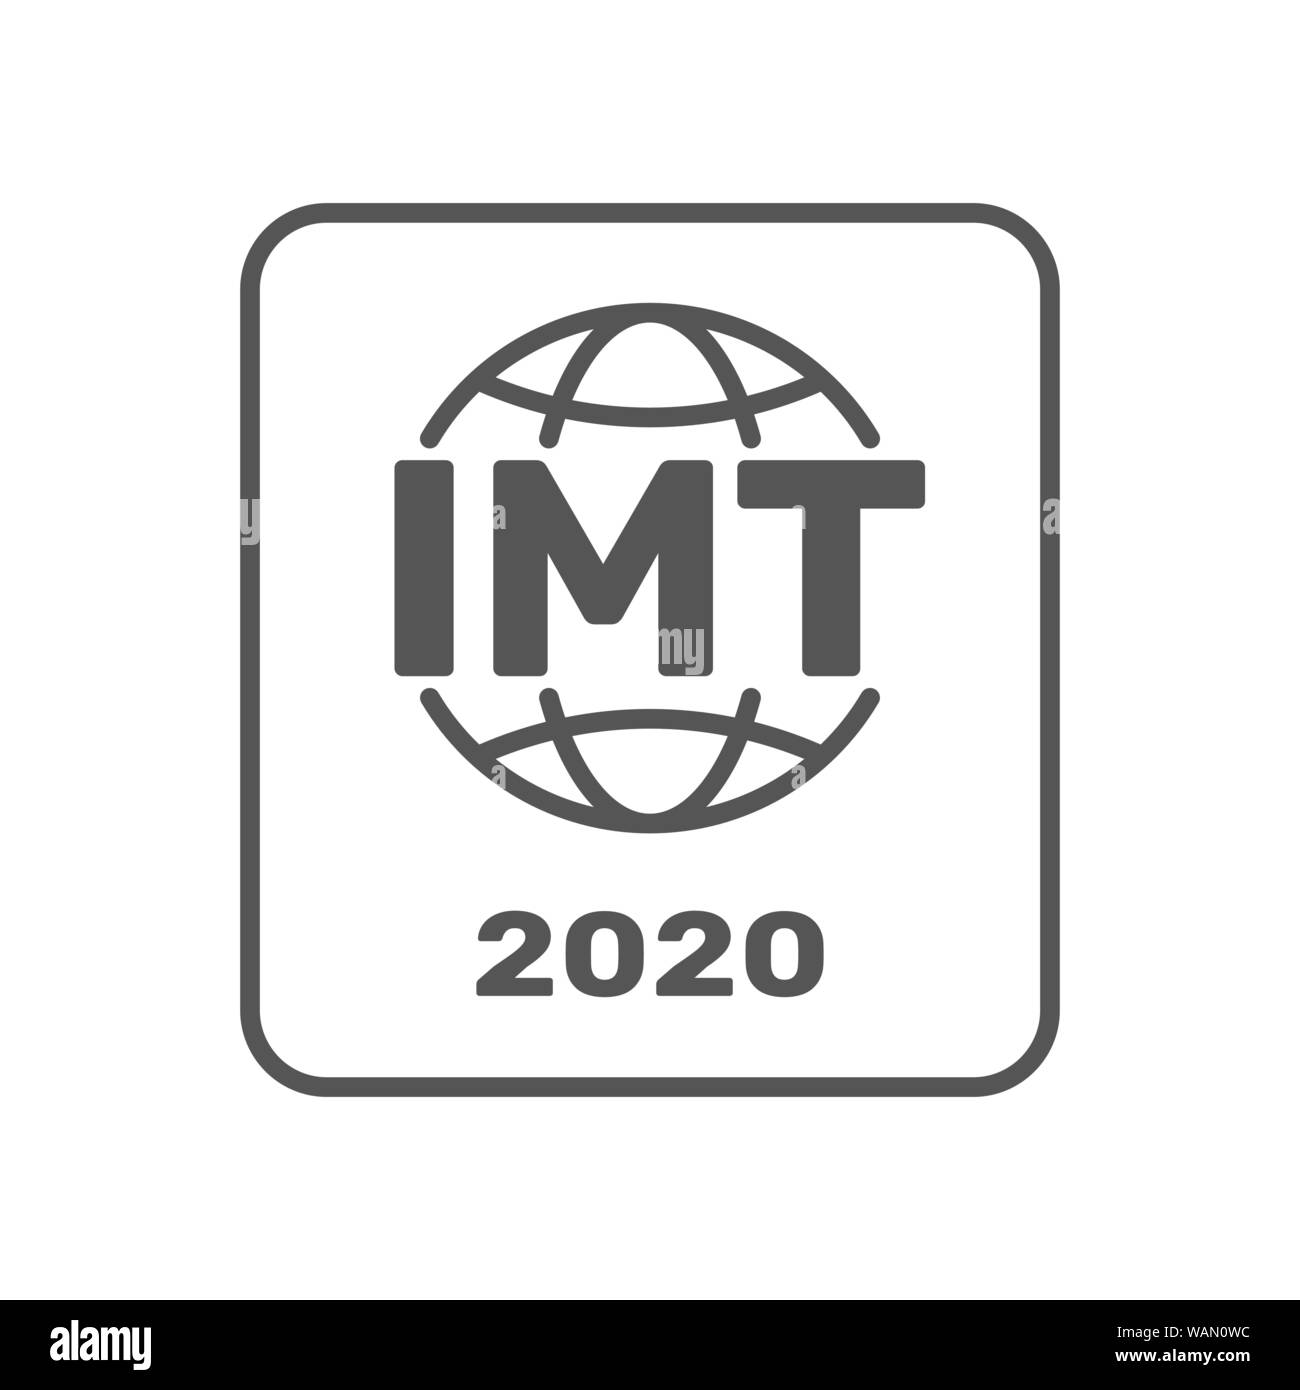 IMT-2020 certification symbol. International standar for 5G networks. Sign of 5G standard. IMT-2020 label, certified badge. Certification stamp. Flat Stock Vector